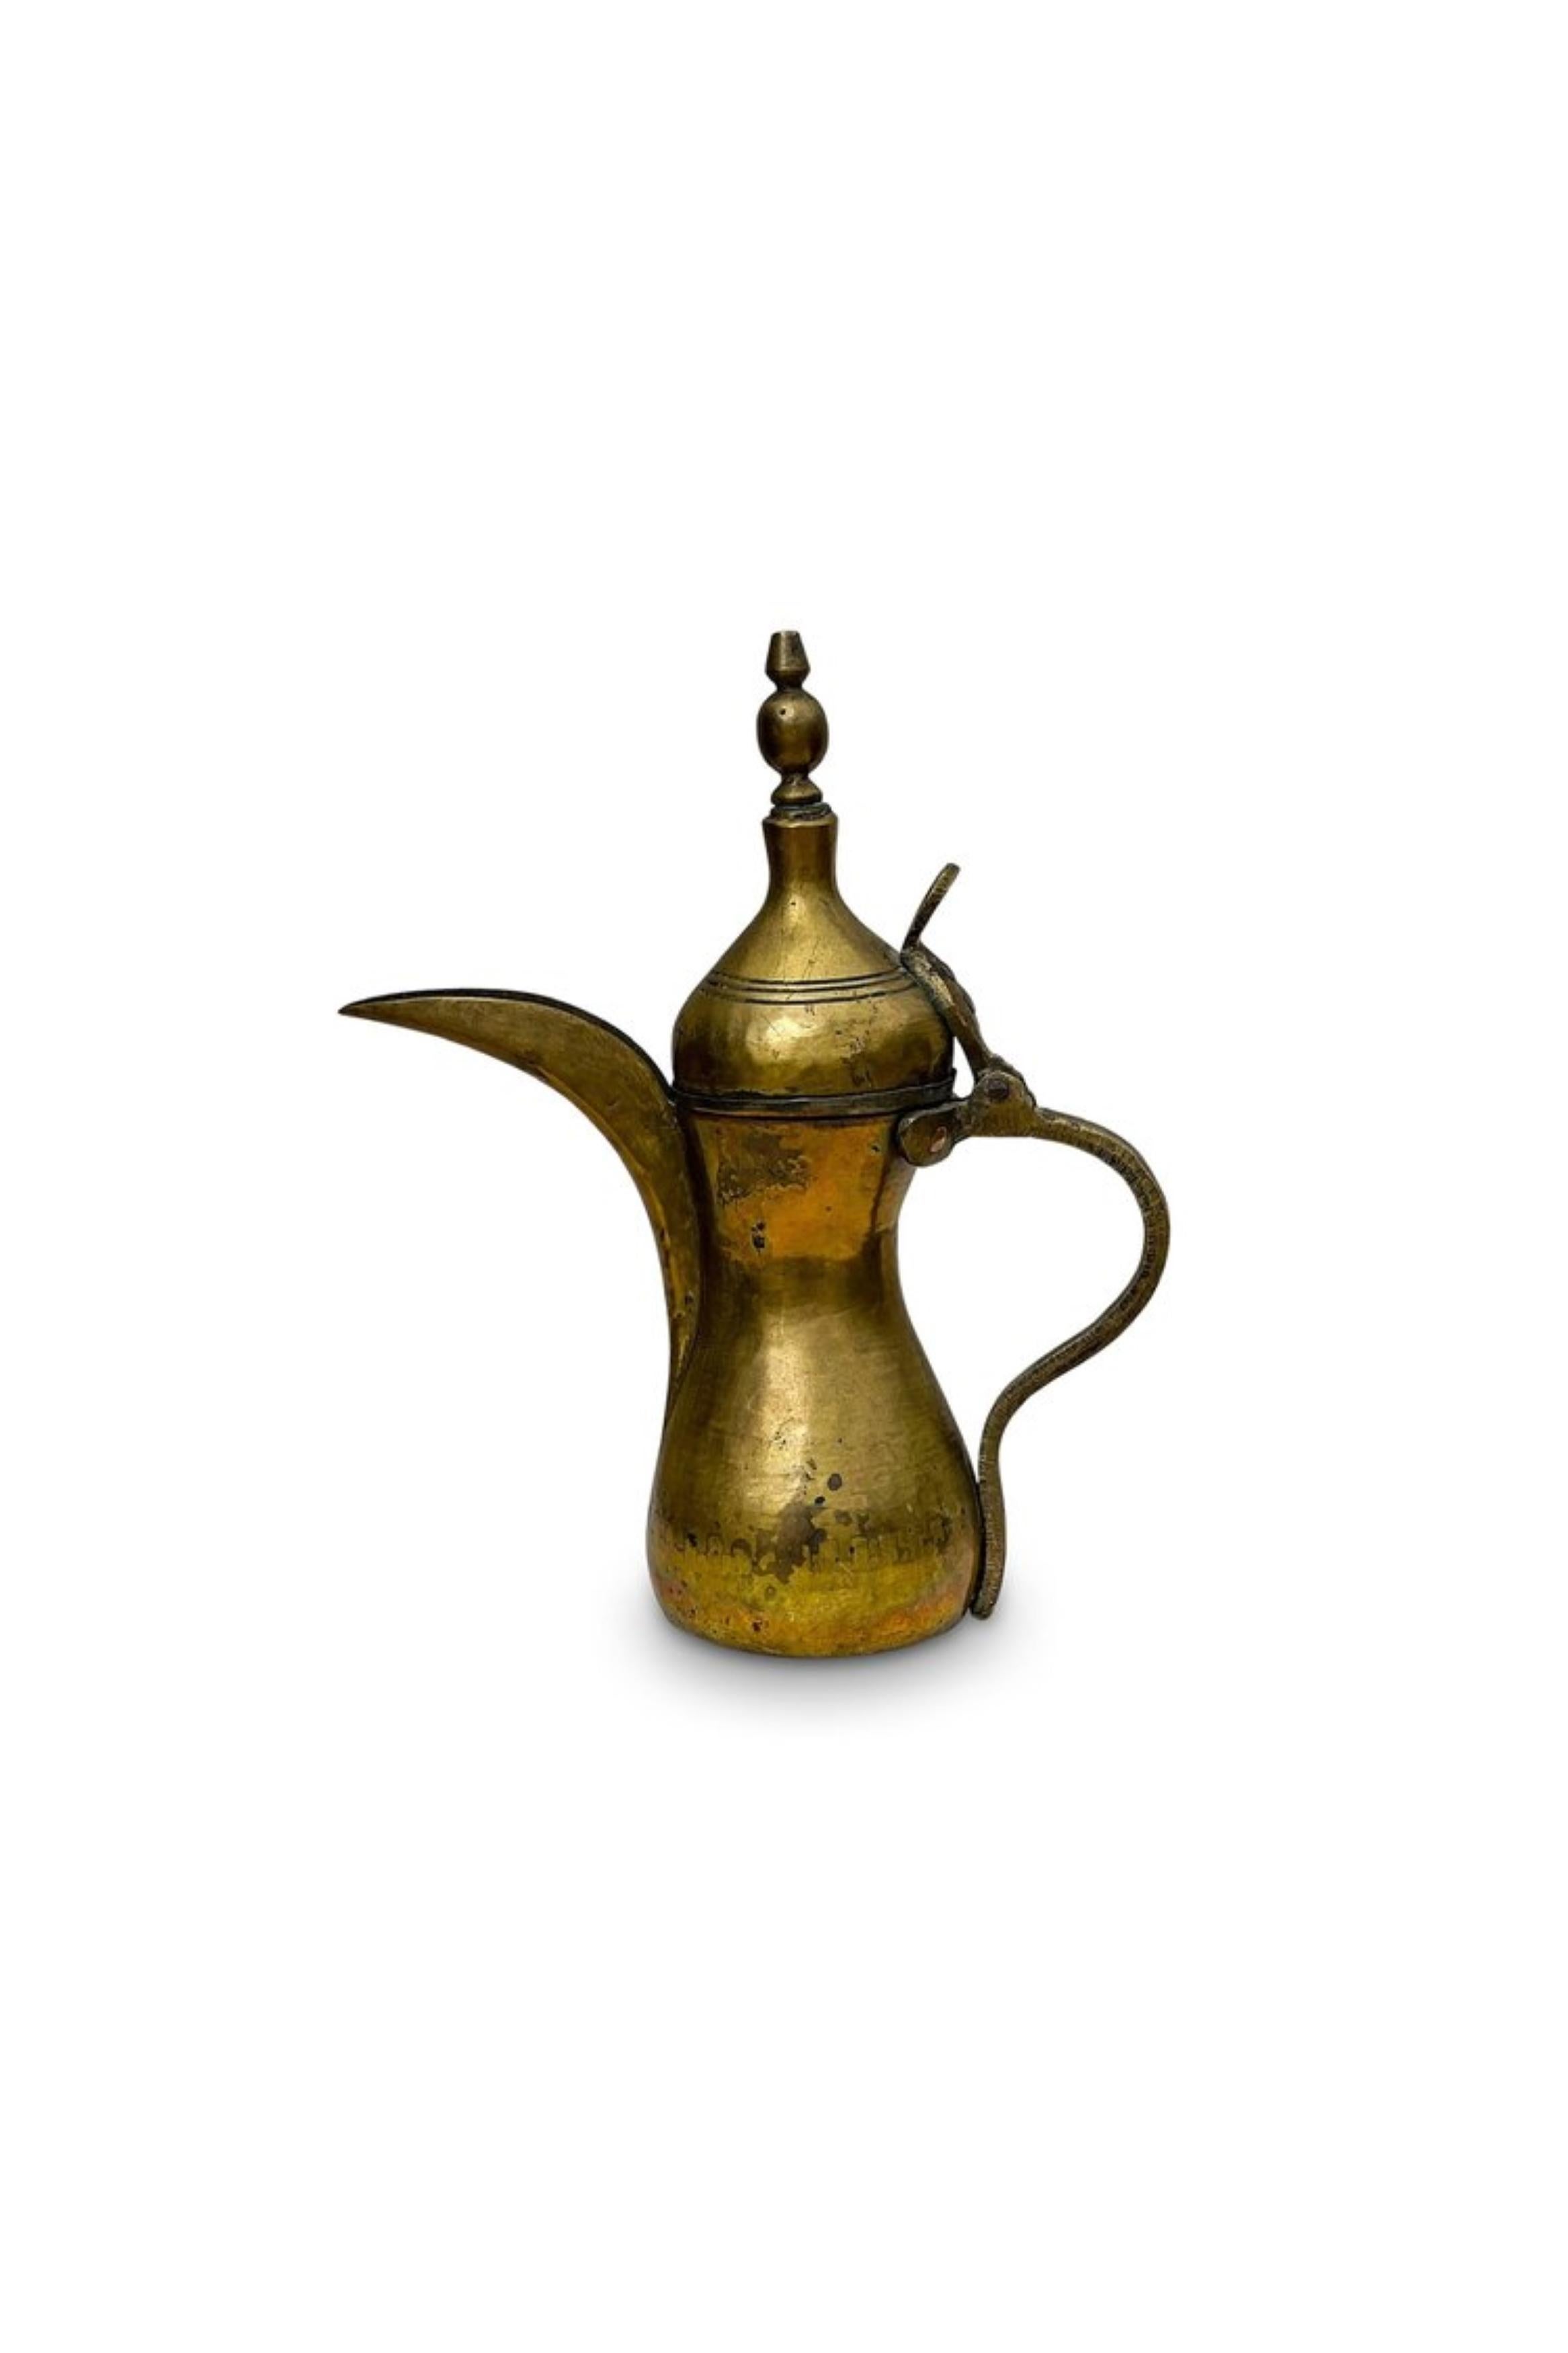 Cette magnifique dallah en laiton, souvent utilisée pour préparer et servir le café, présente des motifs complexes typiques de l'art du Moyen-Orient, mettant en valeur l'habileté du travail du métal. Le pot a une forme distinctive avec un long bec,